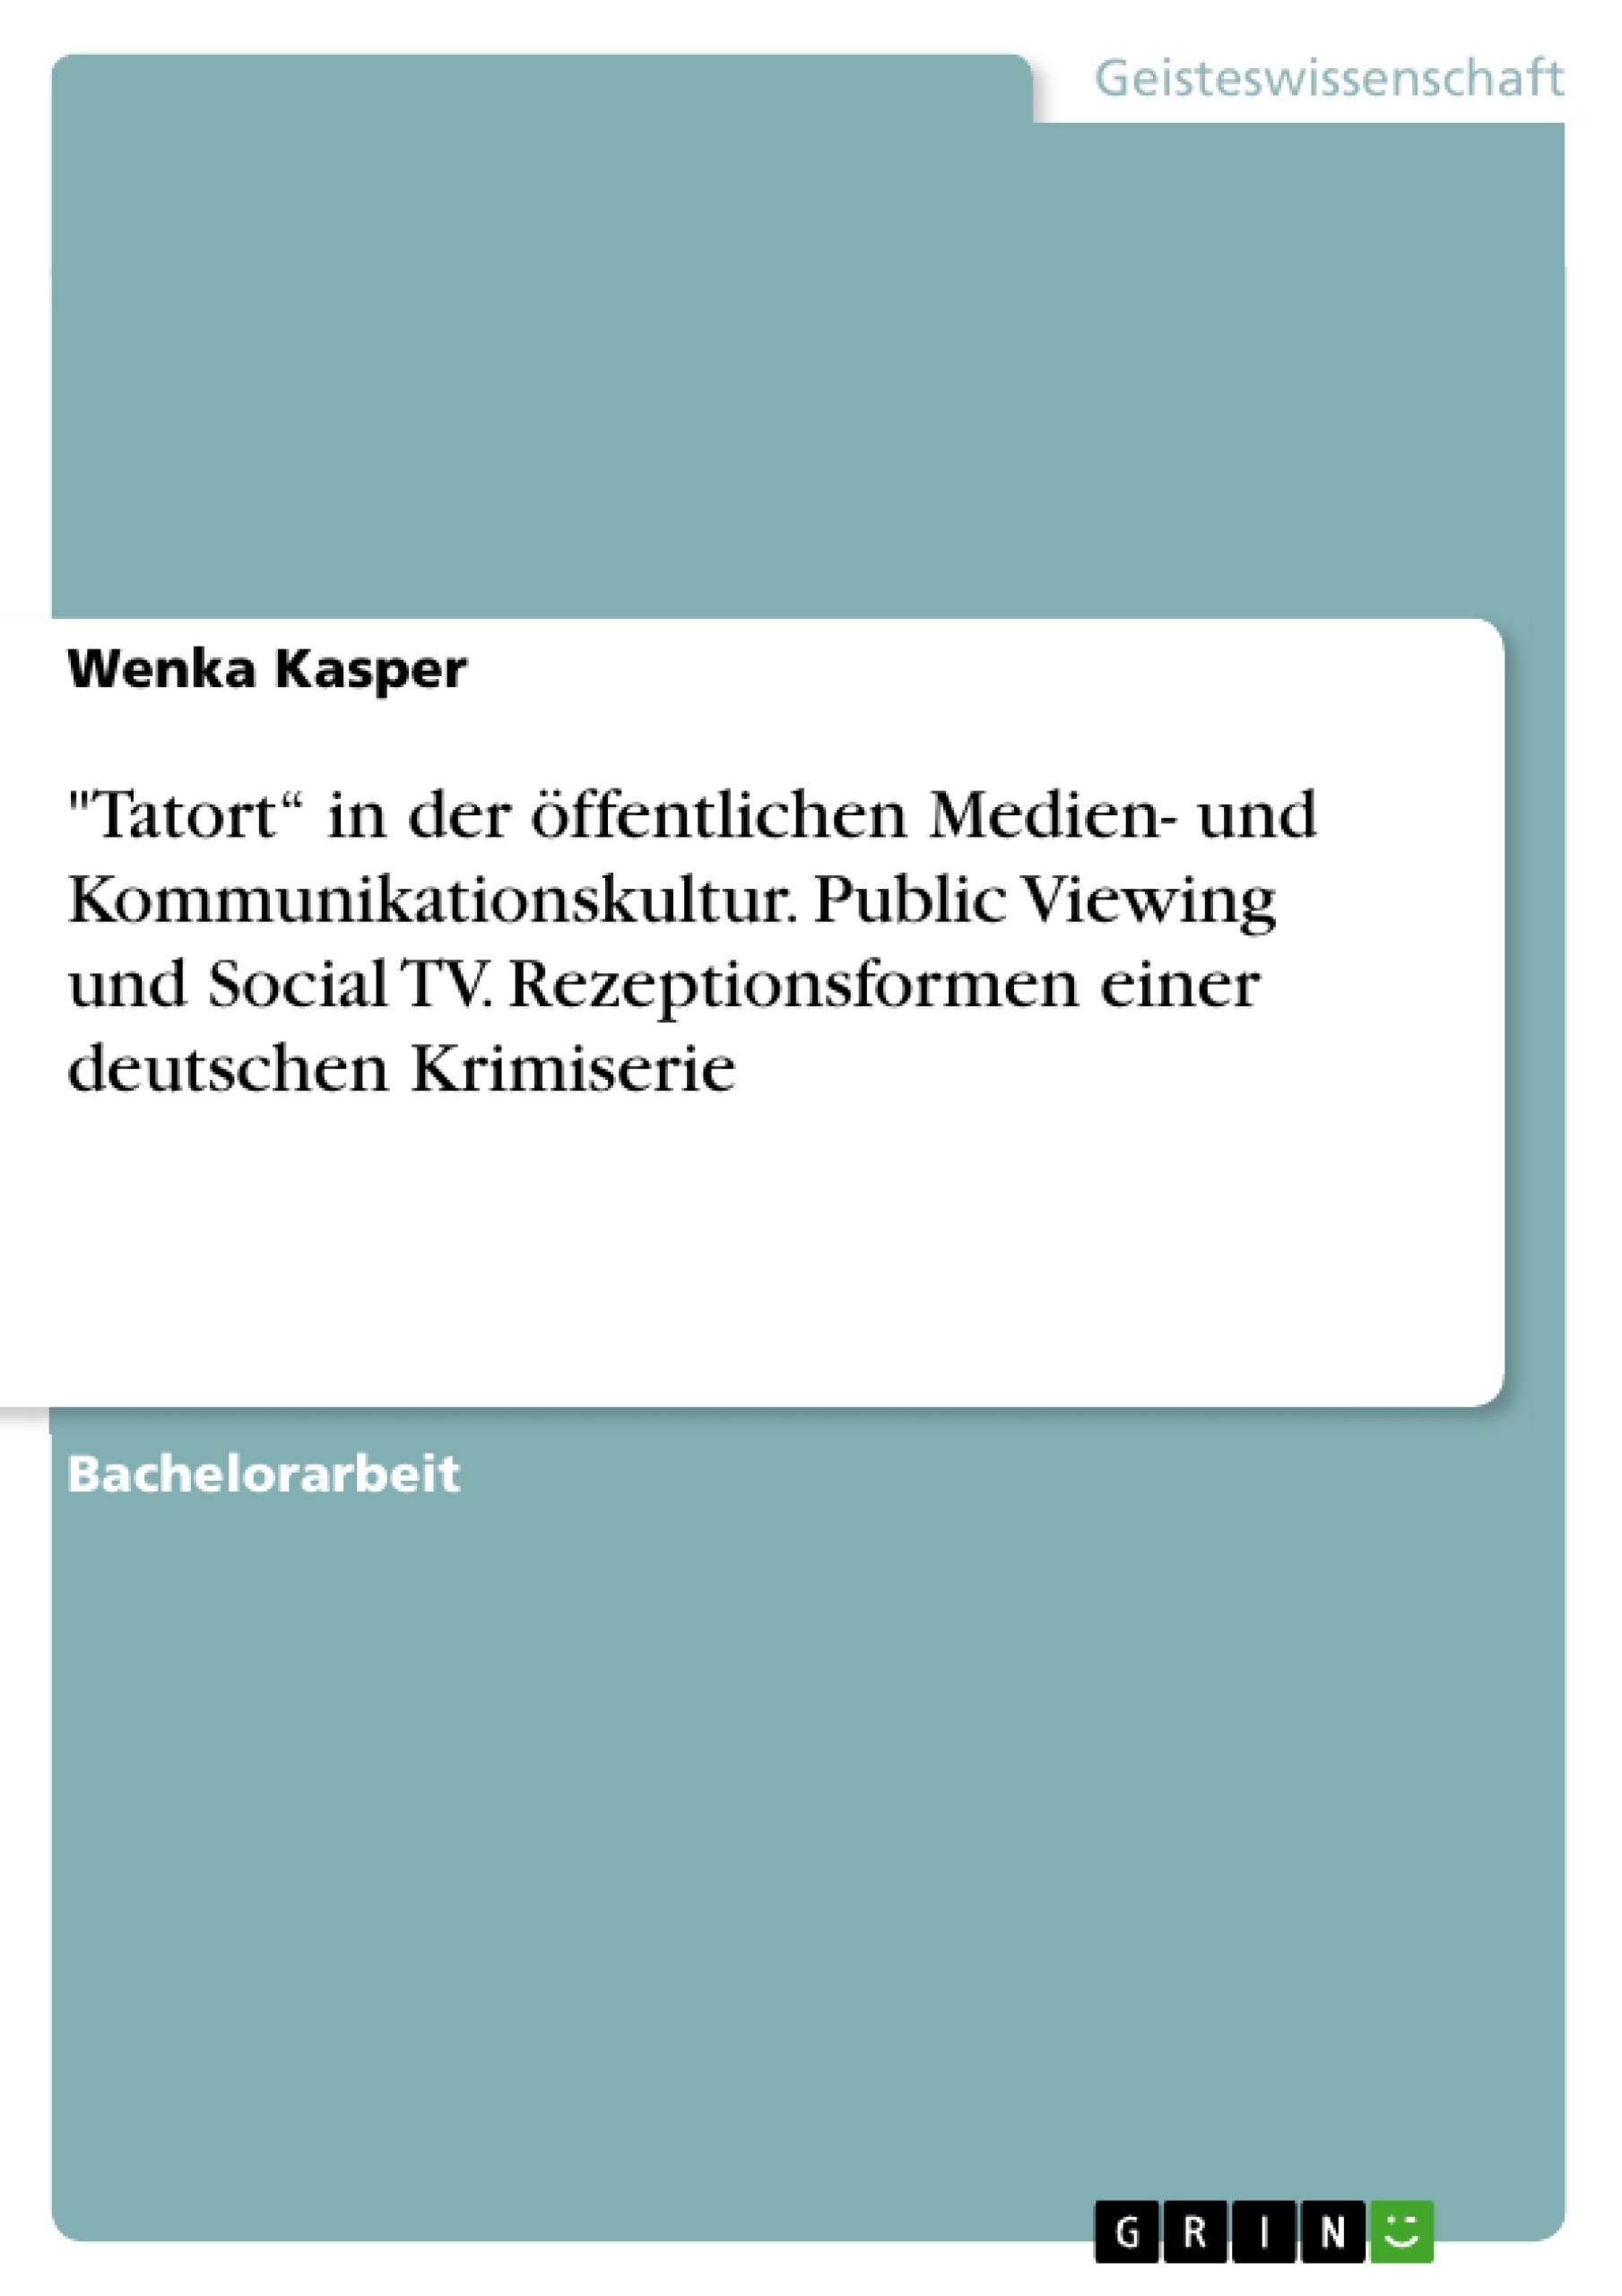 Title: "Tatort“ in der öffentlichen Medien- und Kommunikationskultur. Public Viewing und Social TV. Rezeptionsformen einer deutschen Krimiserie